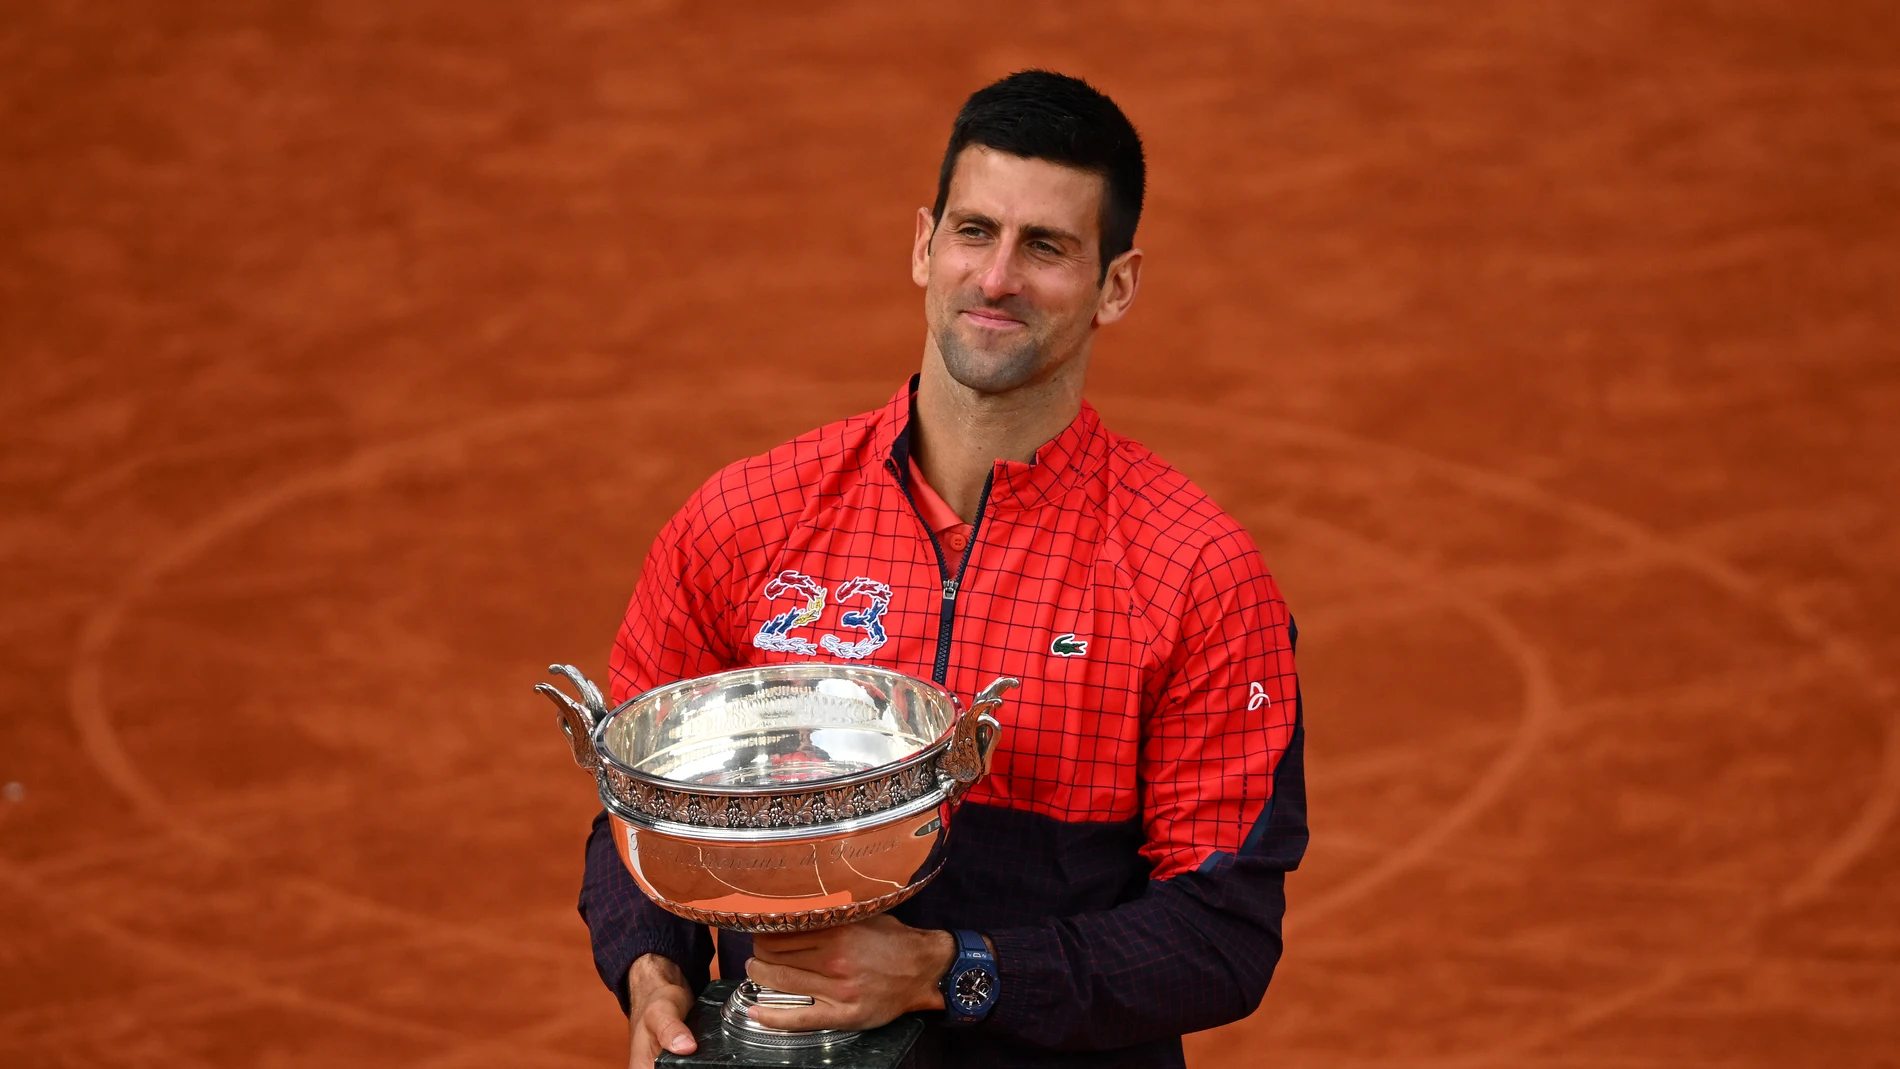 El récord al que aspìra conseguir Novak Djokovic: nadie lo ha hecho en 53 años